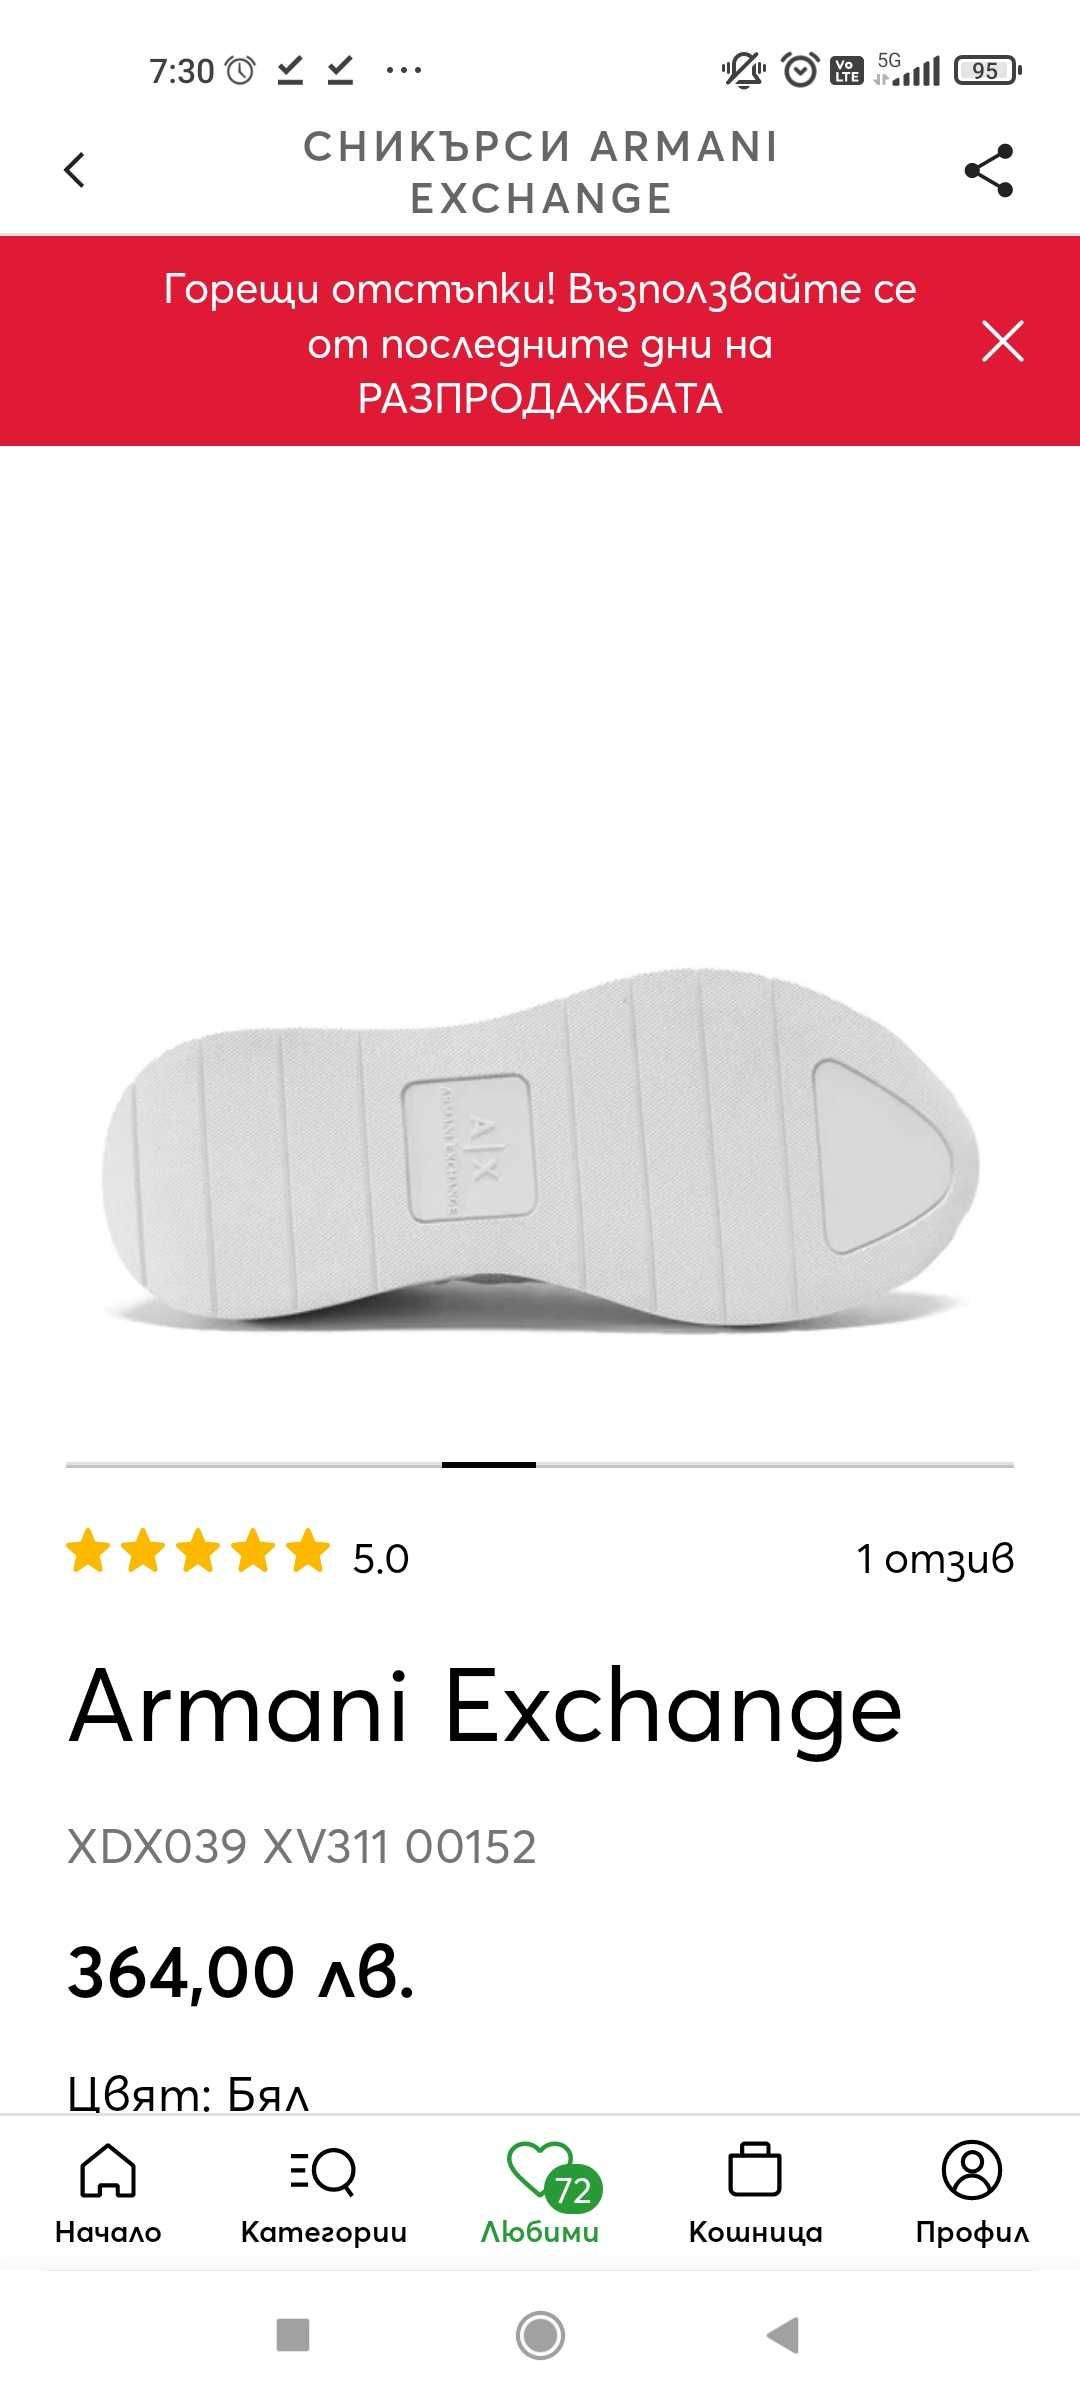 Armani exchange ПРОМОЦИЯ